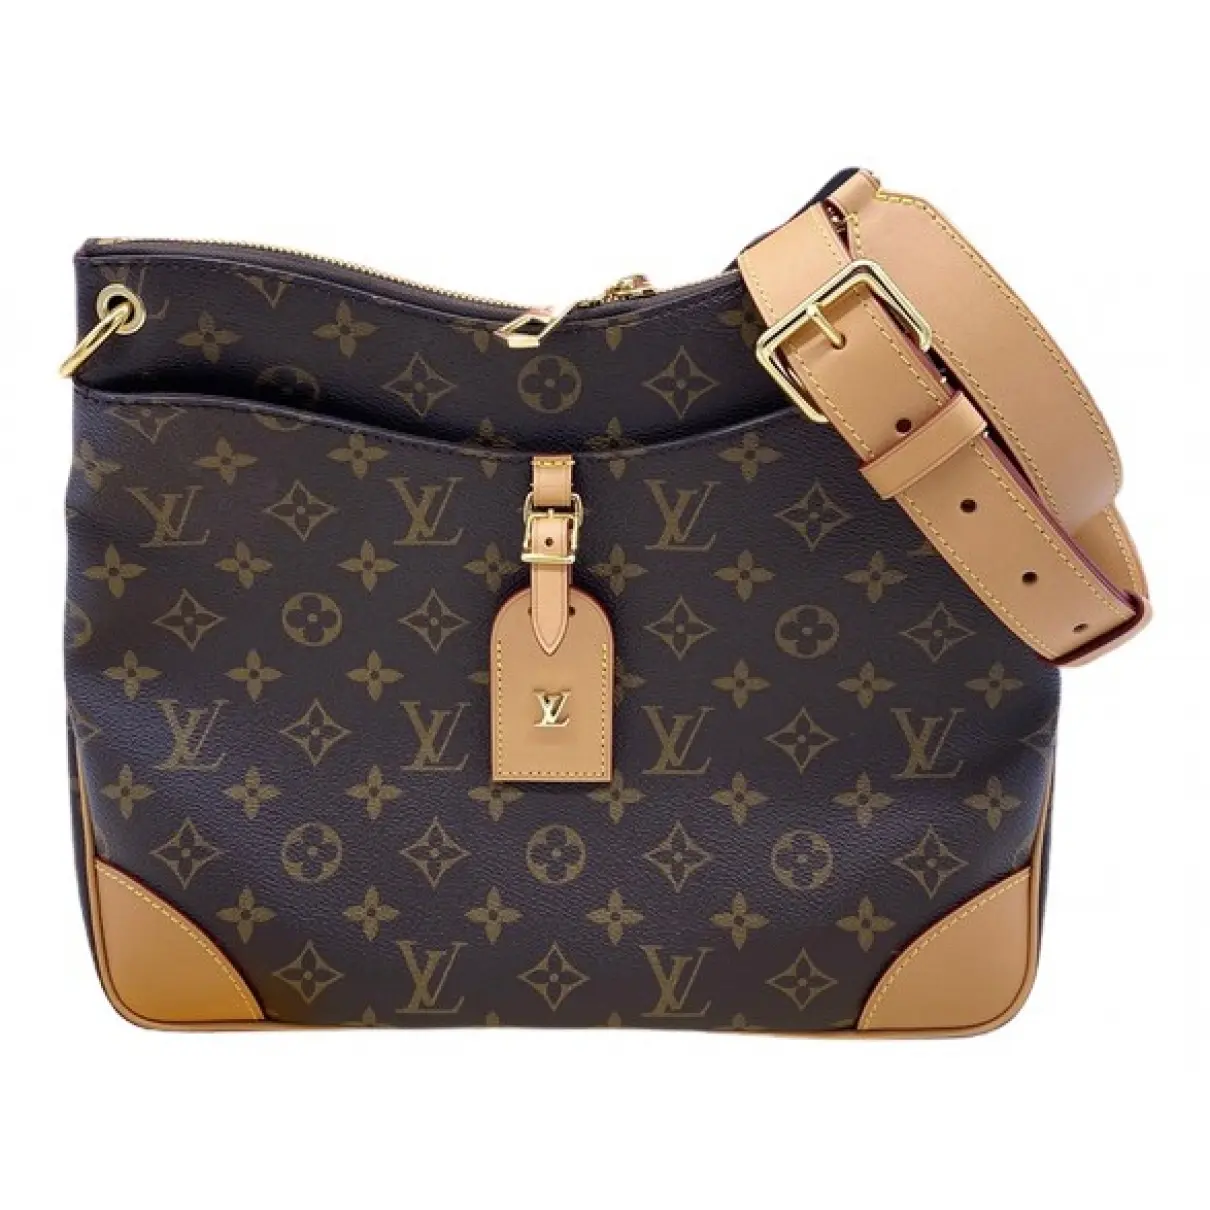 Odéon cloth handbag Louis Vuitton